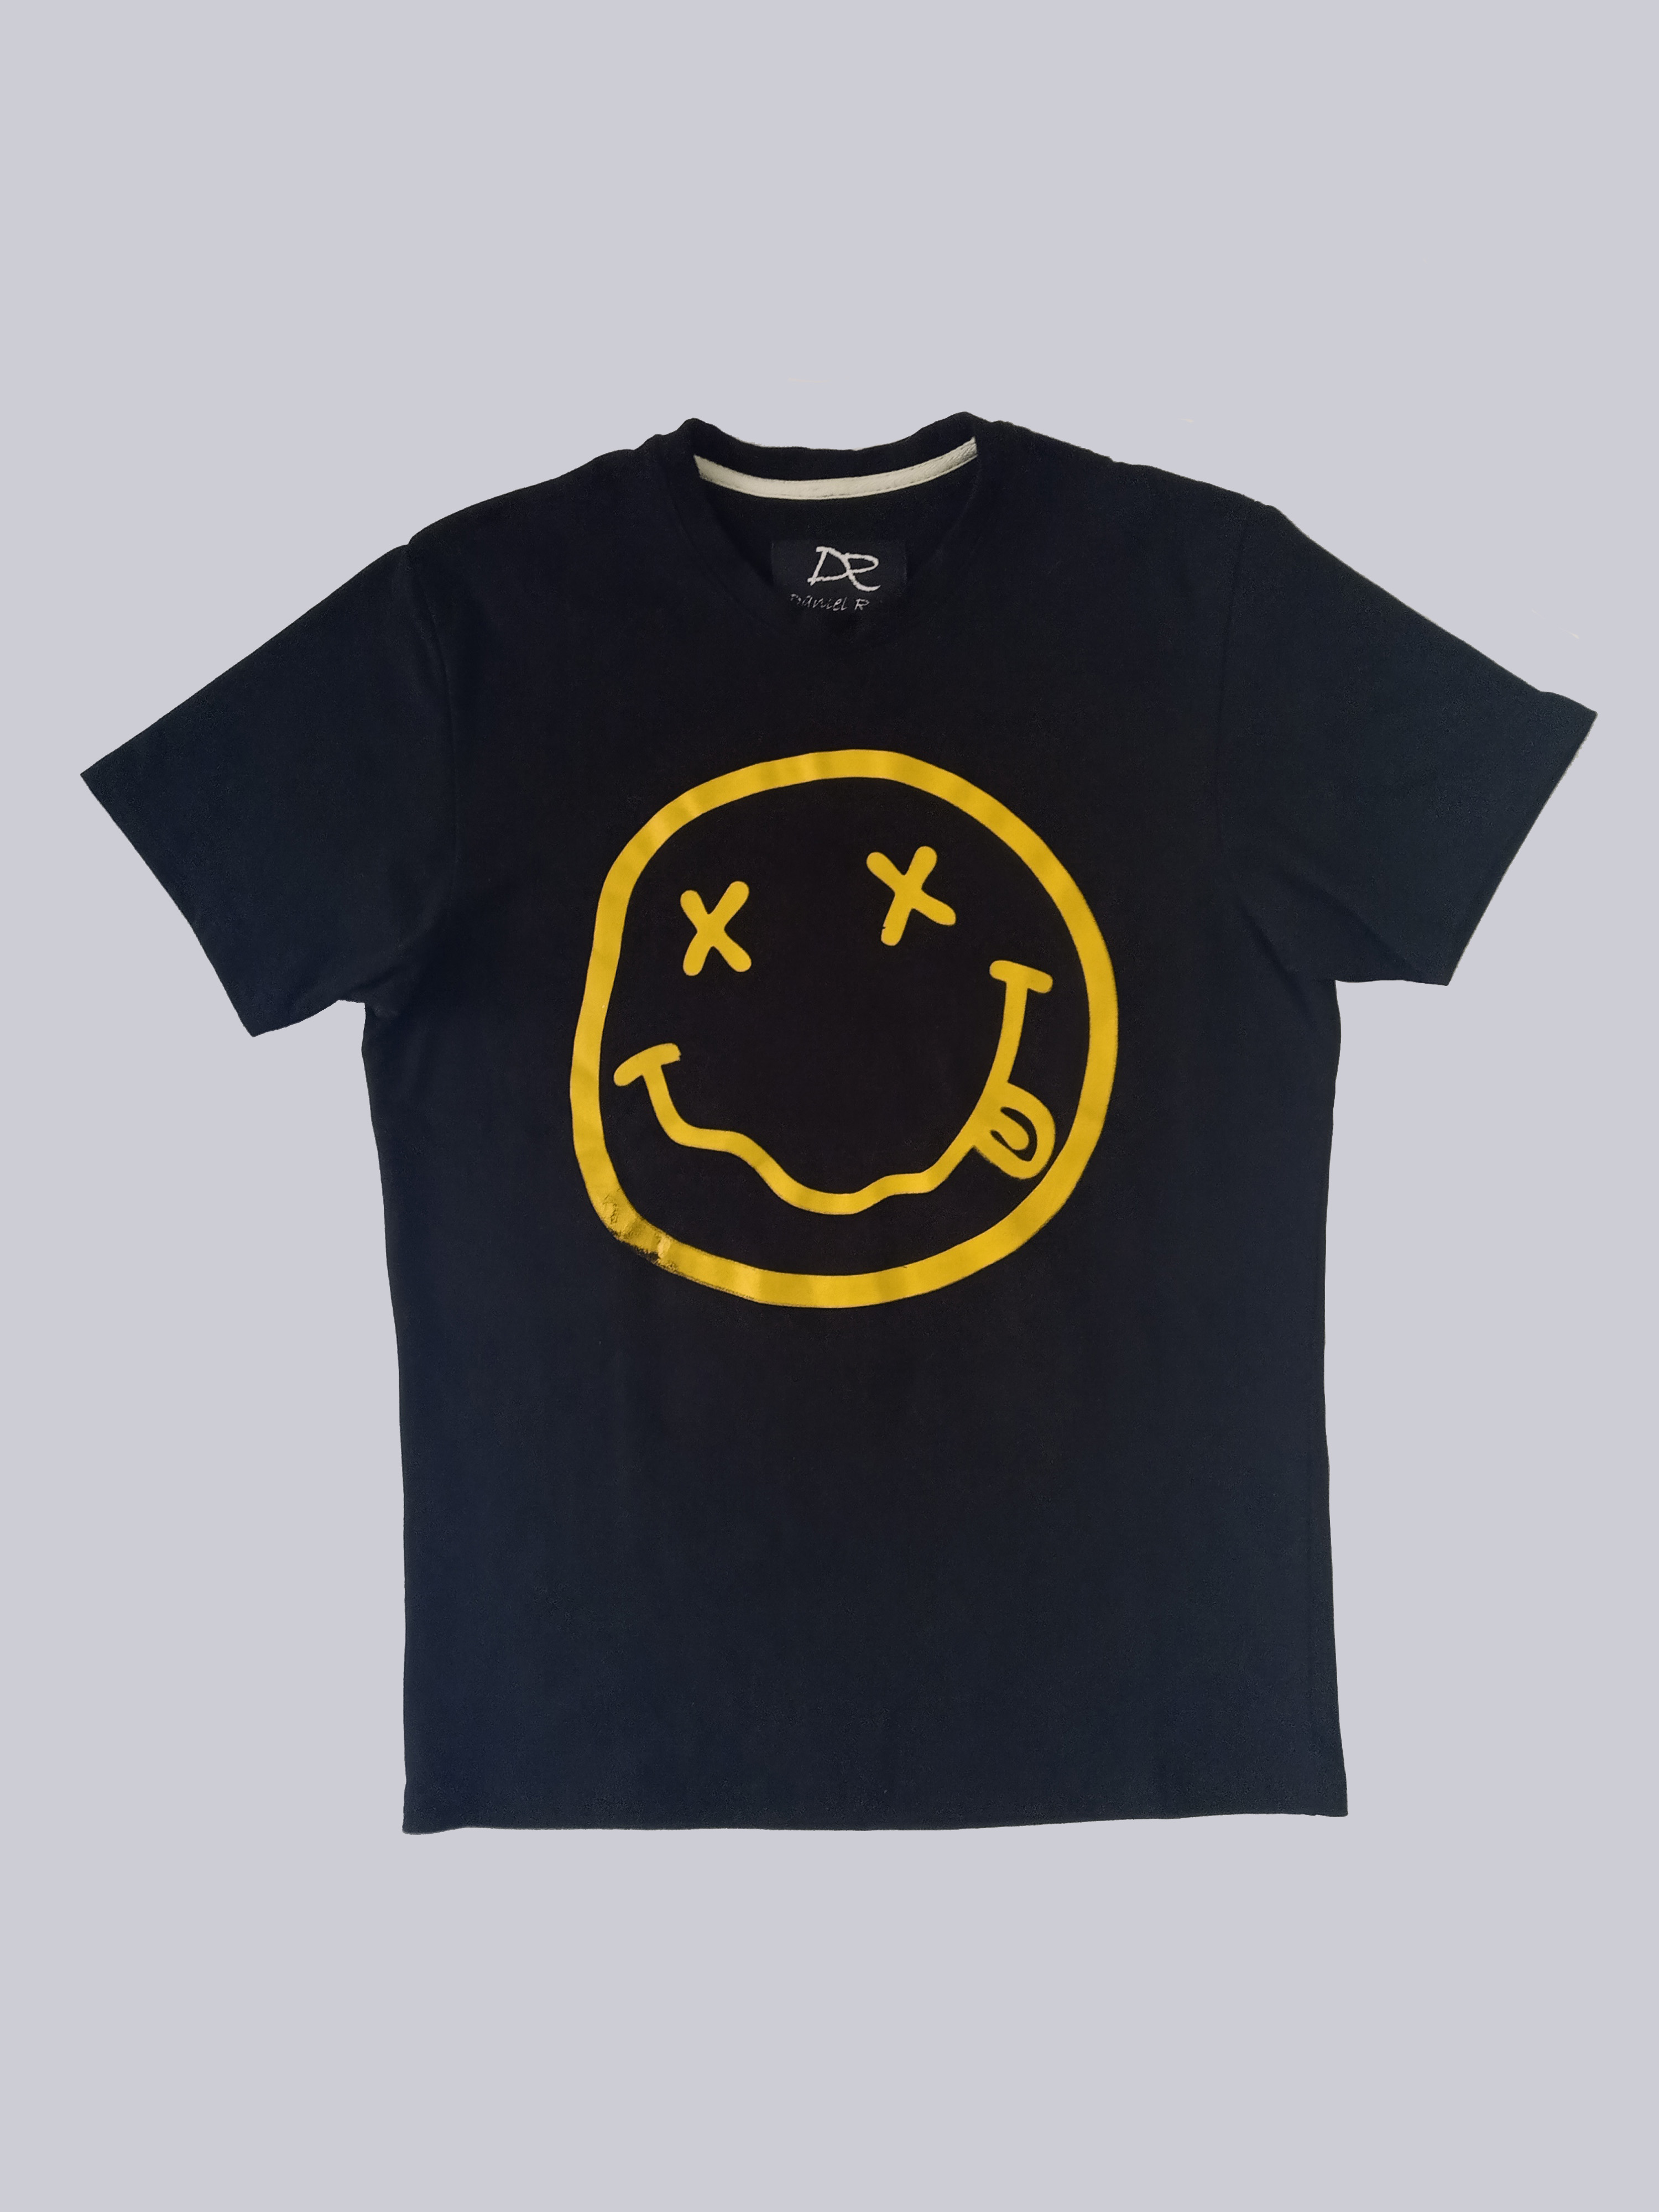 Nirvana t-shirt 2